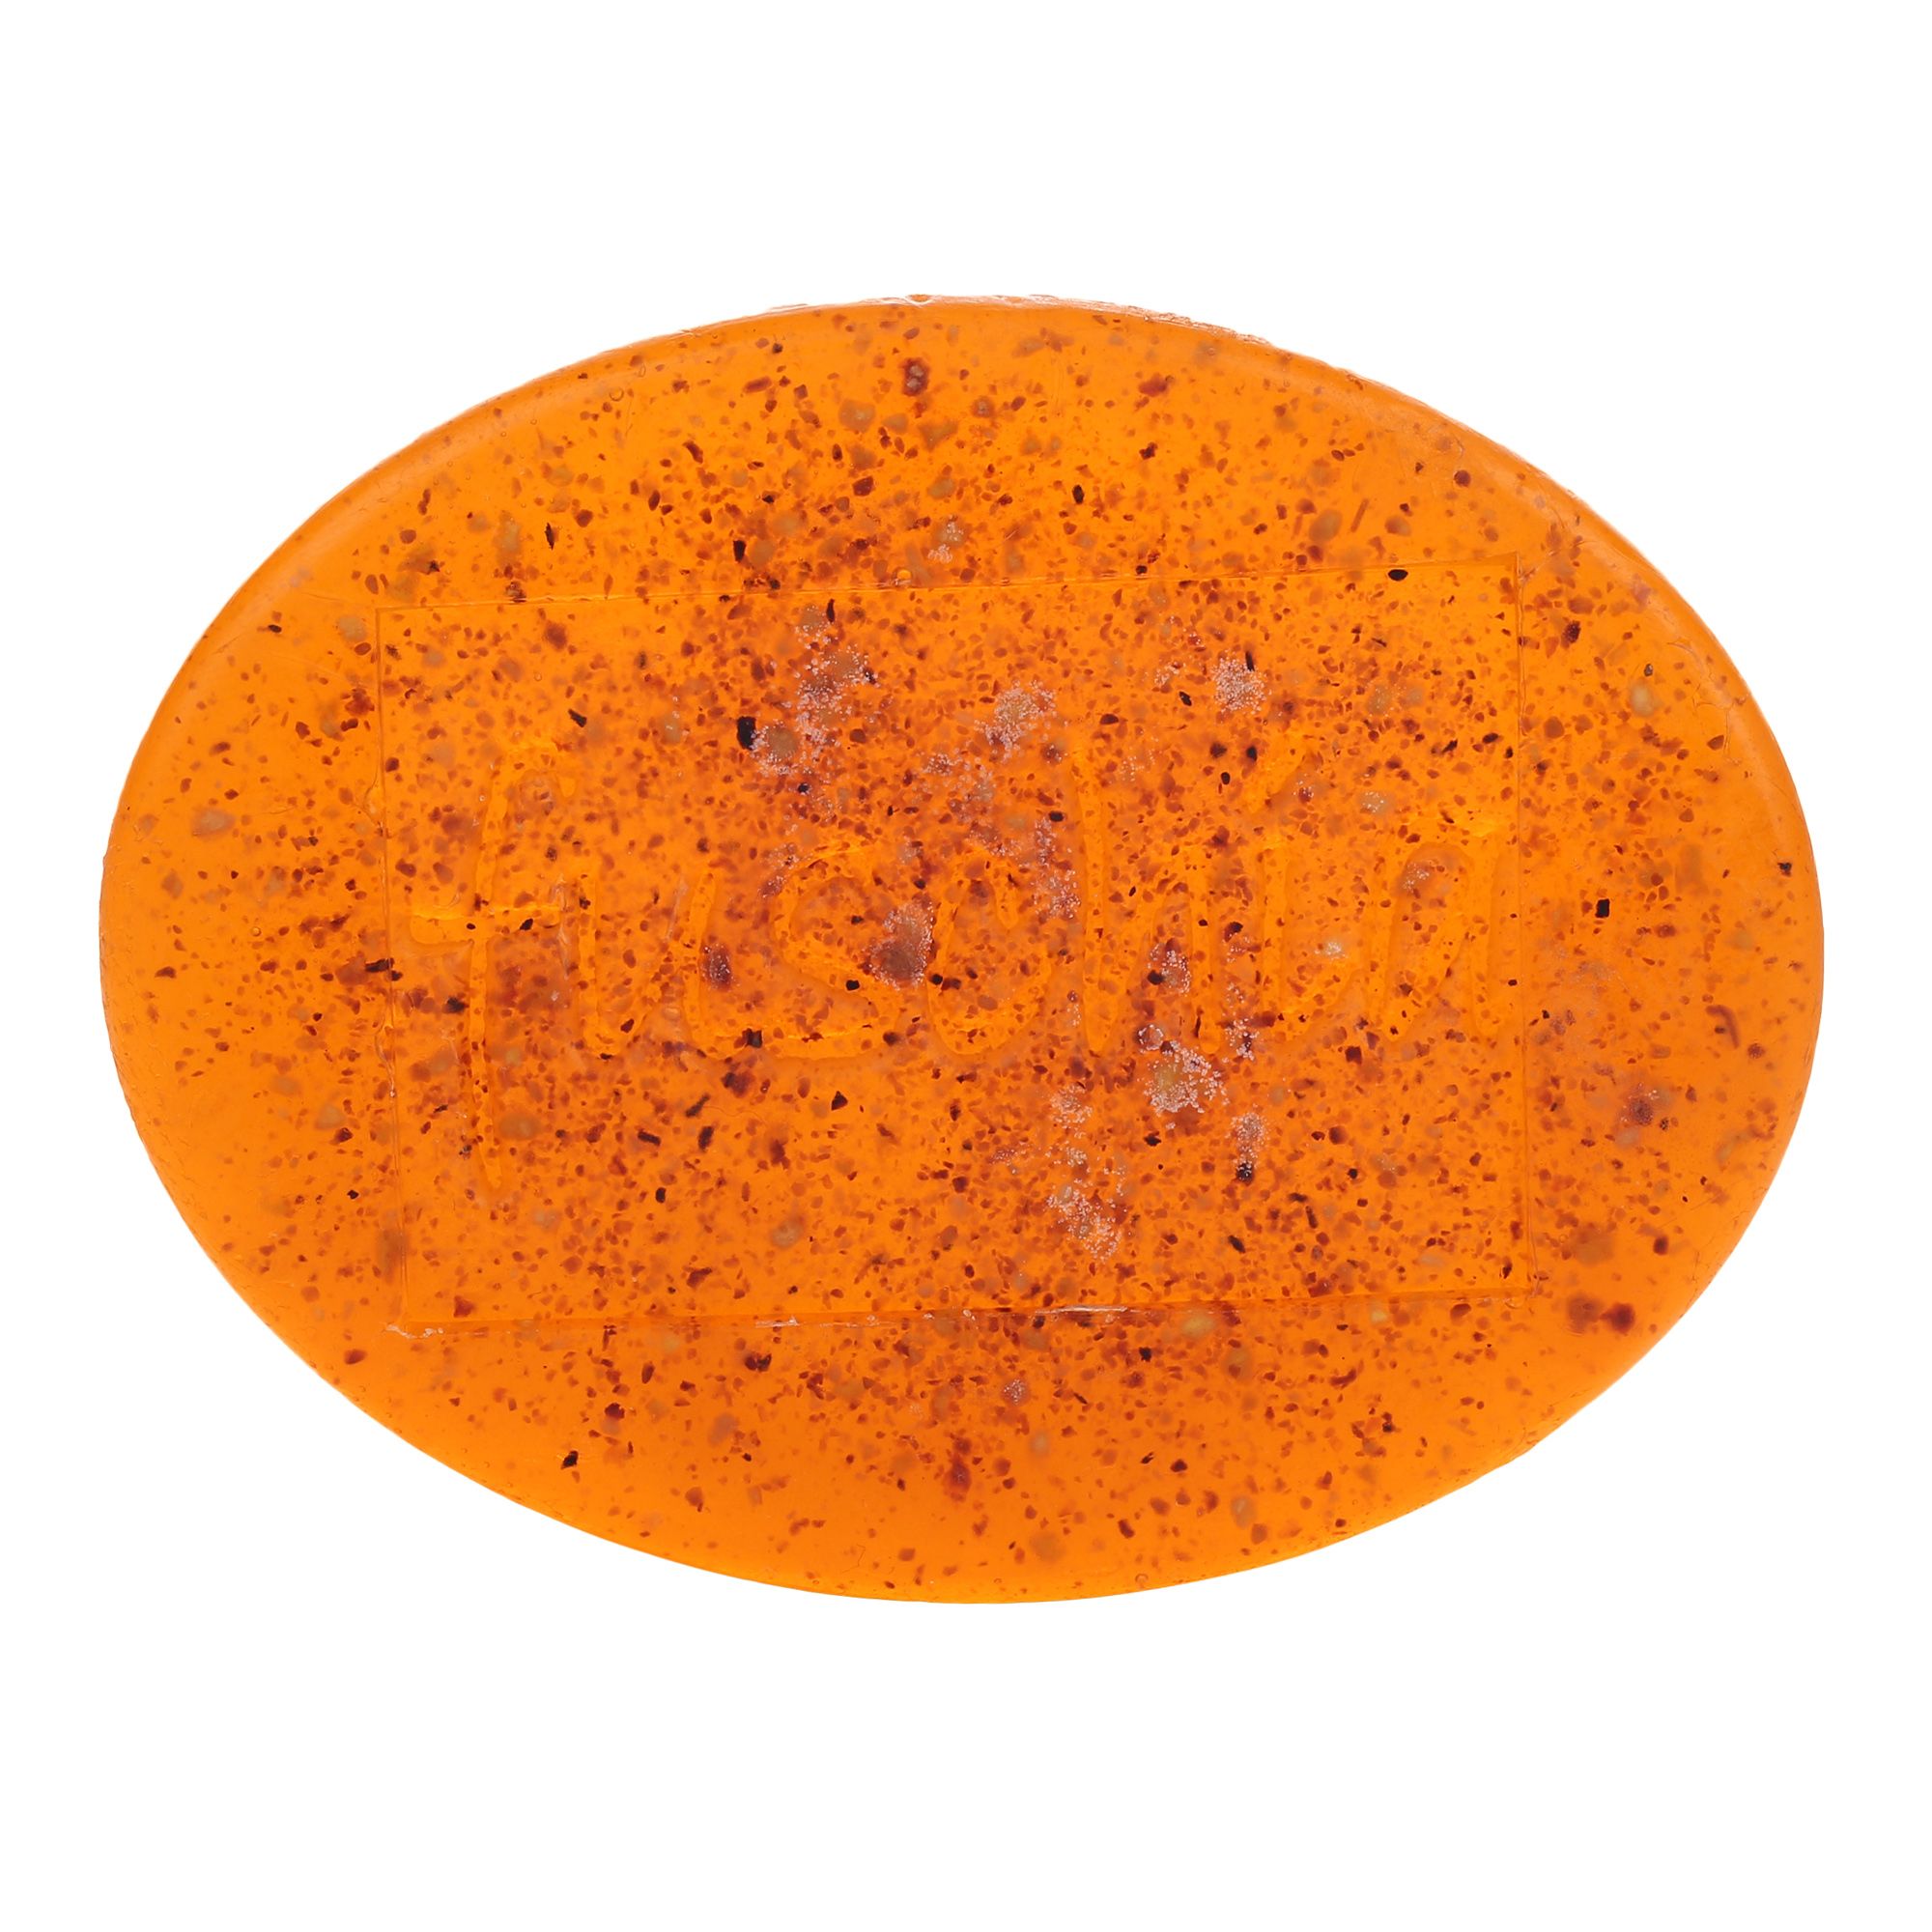 fuschia-orange-peel-natural-handmade-herbal-soap